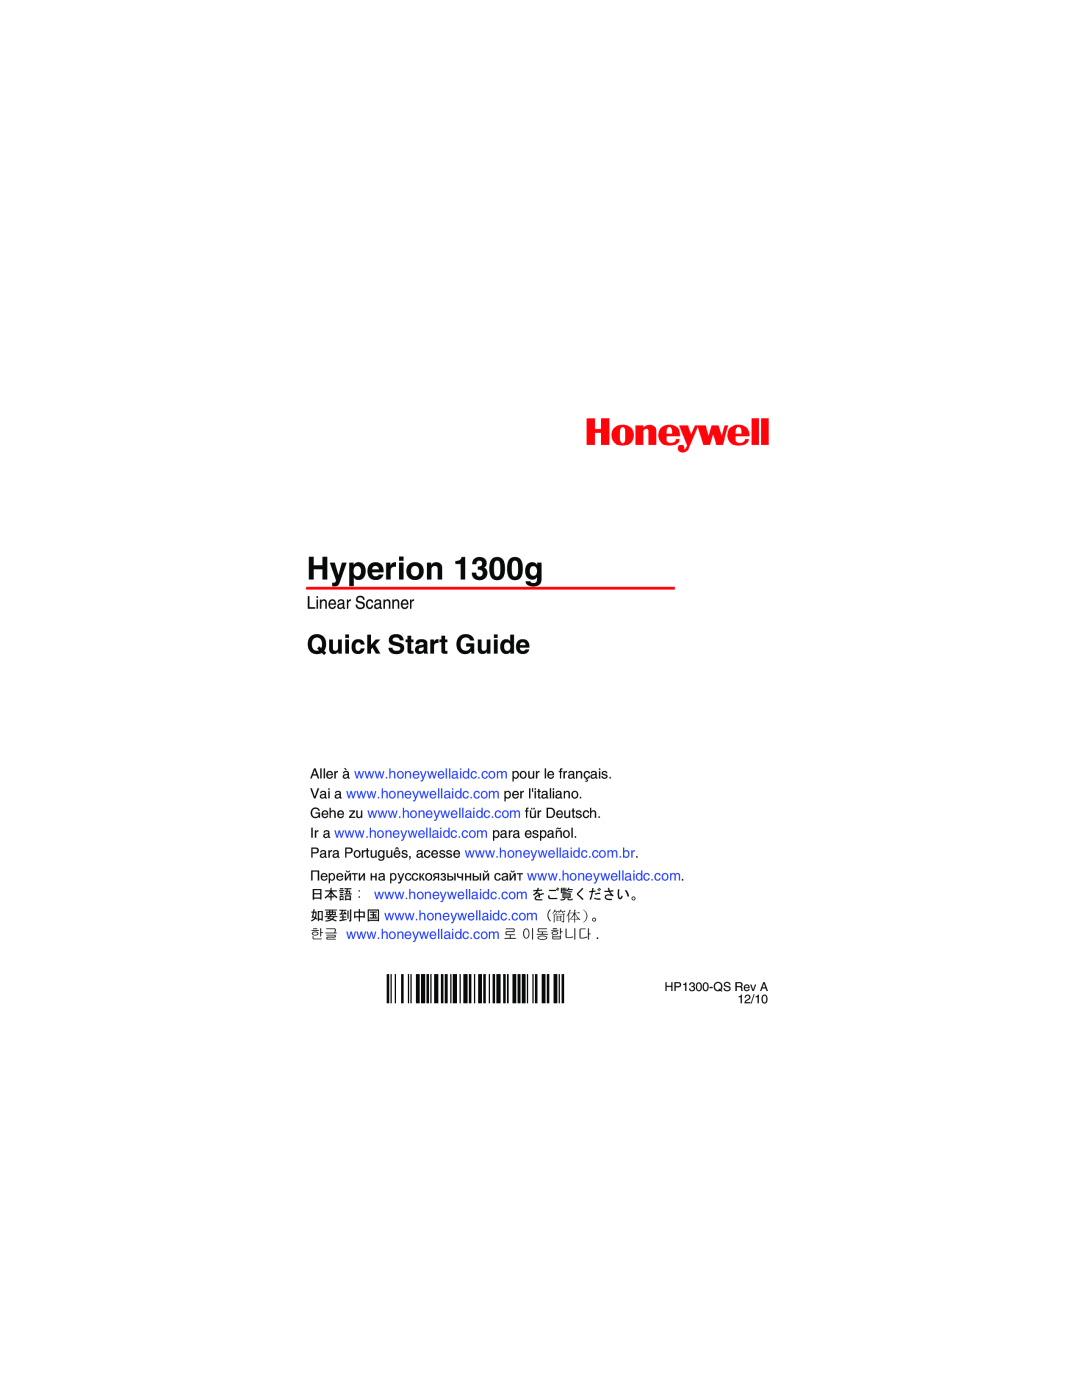 Honeywell Hyperion 1300 g quick start Hyperion 1300g, Quick Start Guide, Linear Scanner, HP1300-QS Rev A 12/10 